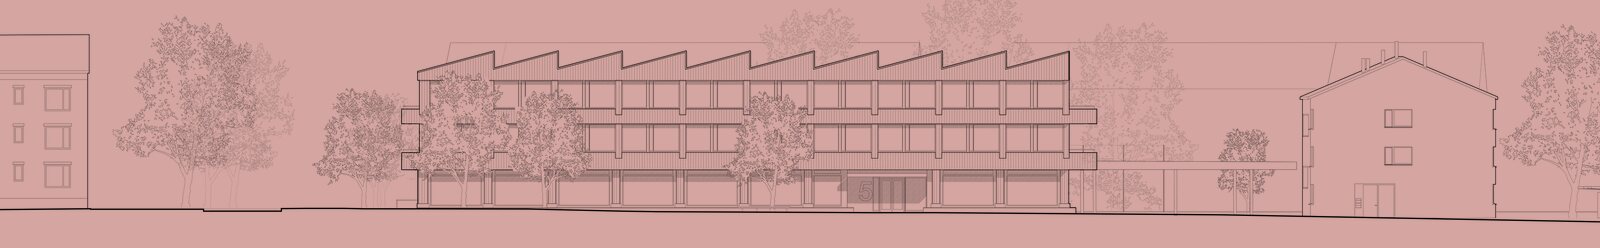 Grüze - Schulhausneubau mit Doppelturnhalle in Dübendorf - Schmid Schaerer Architekten Zürich